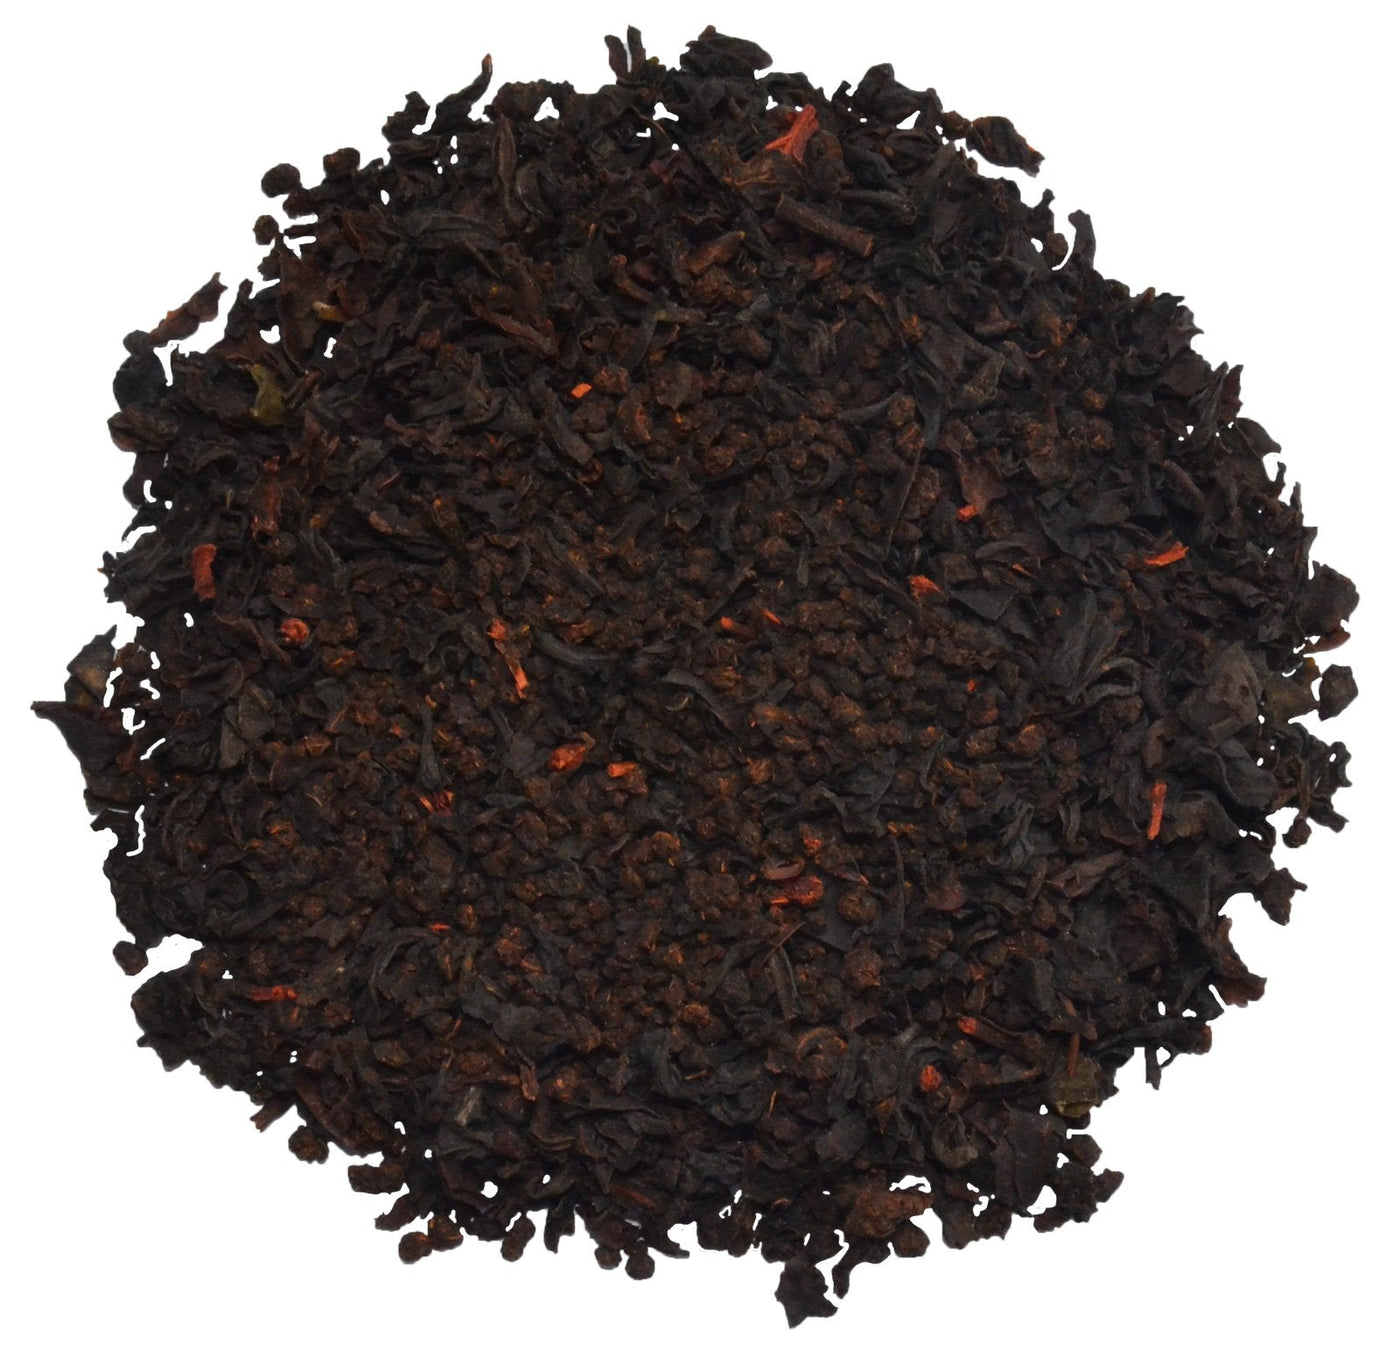 English Breakfast Black Tea Bags / Loose Tea Leaf